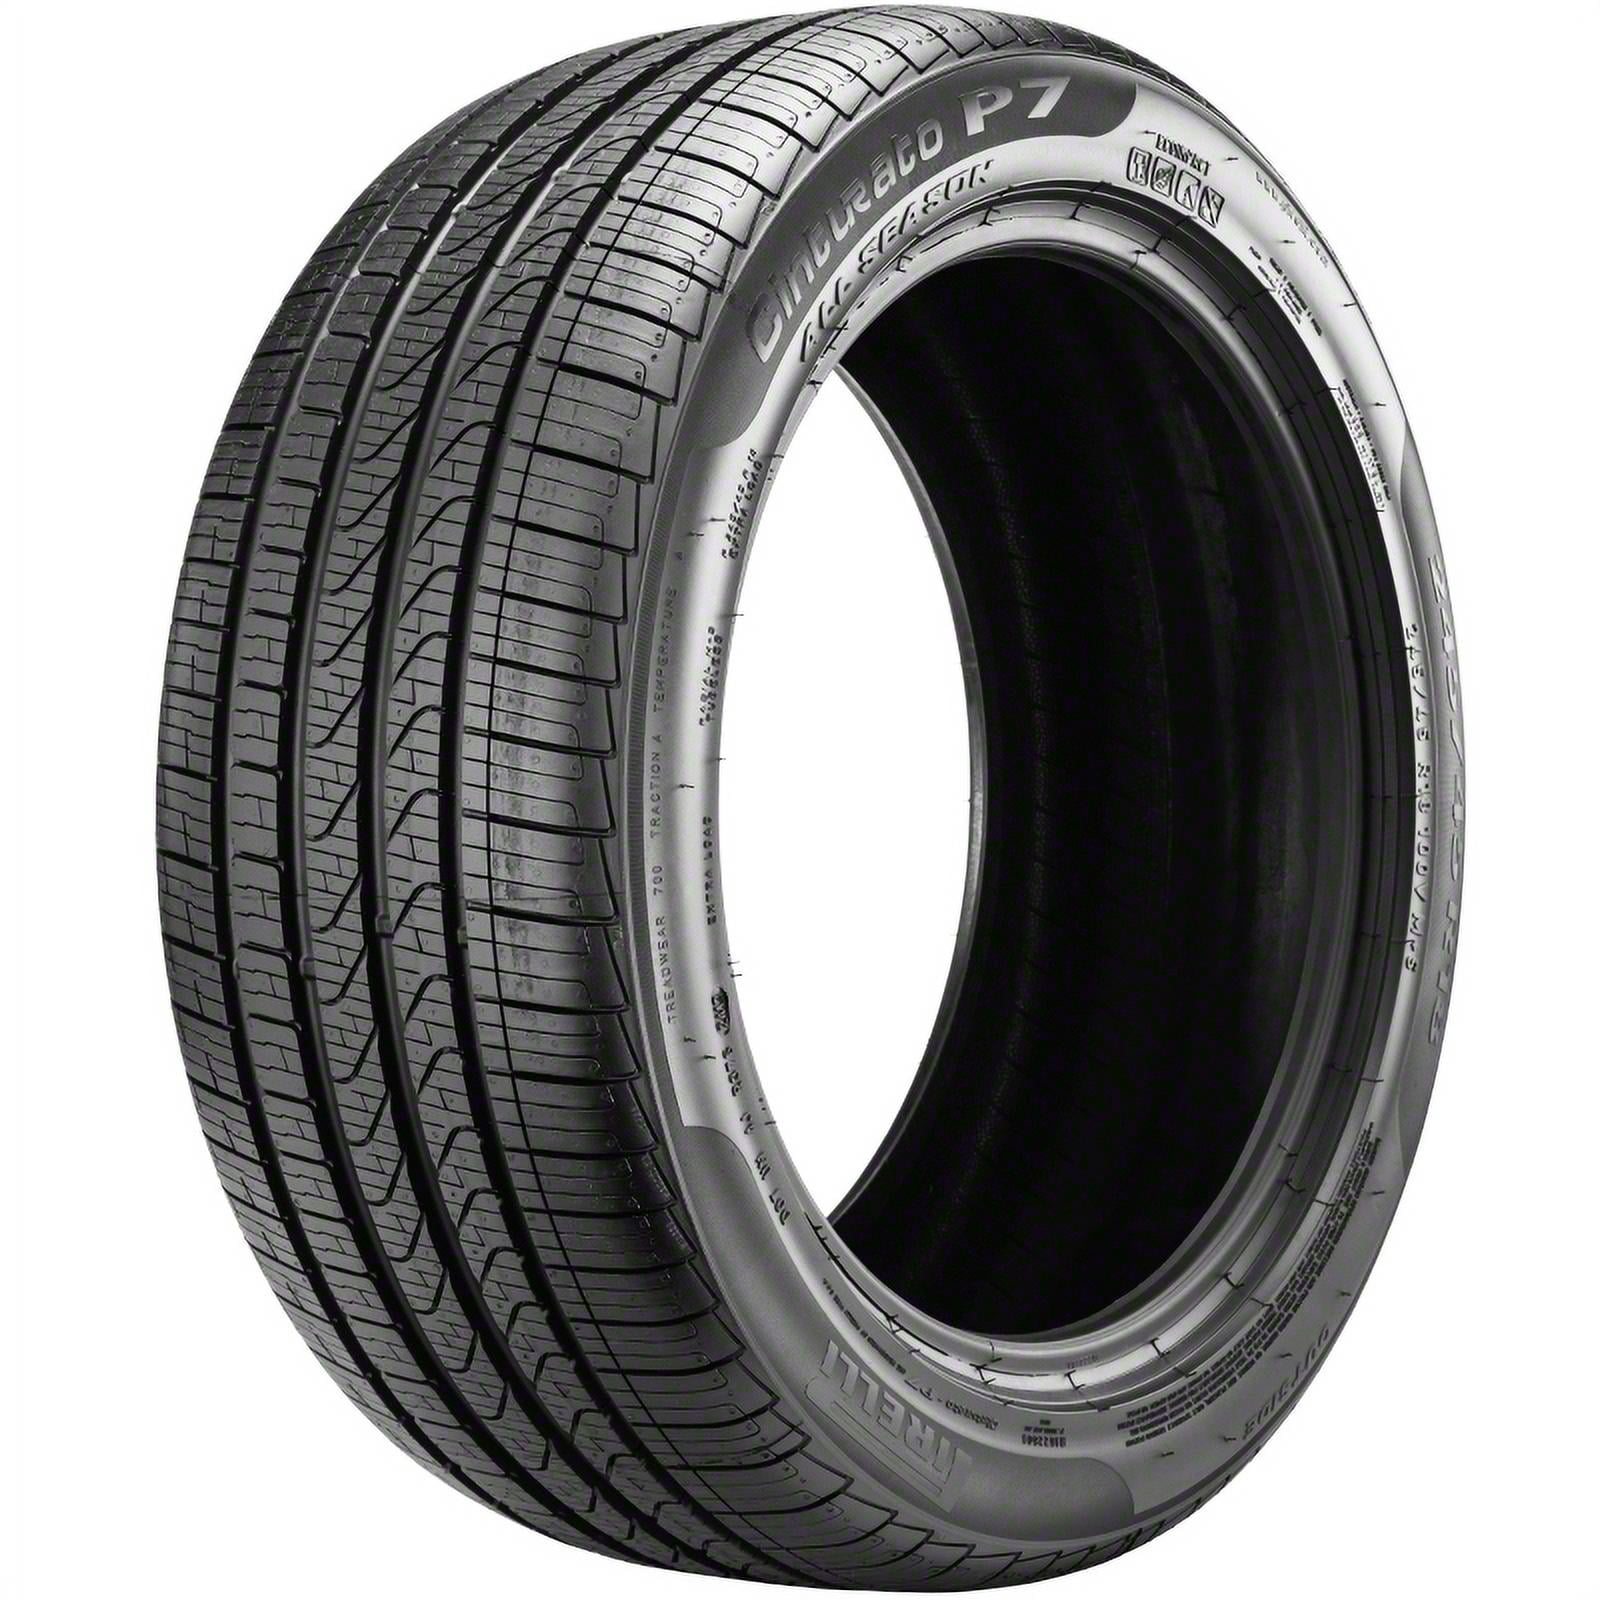 Pirelli Cinturato P7 All Season 245/45R18 100H XL A/S All Season Tire